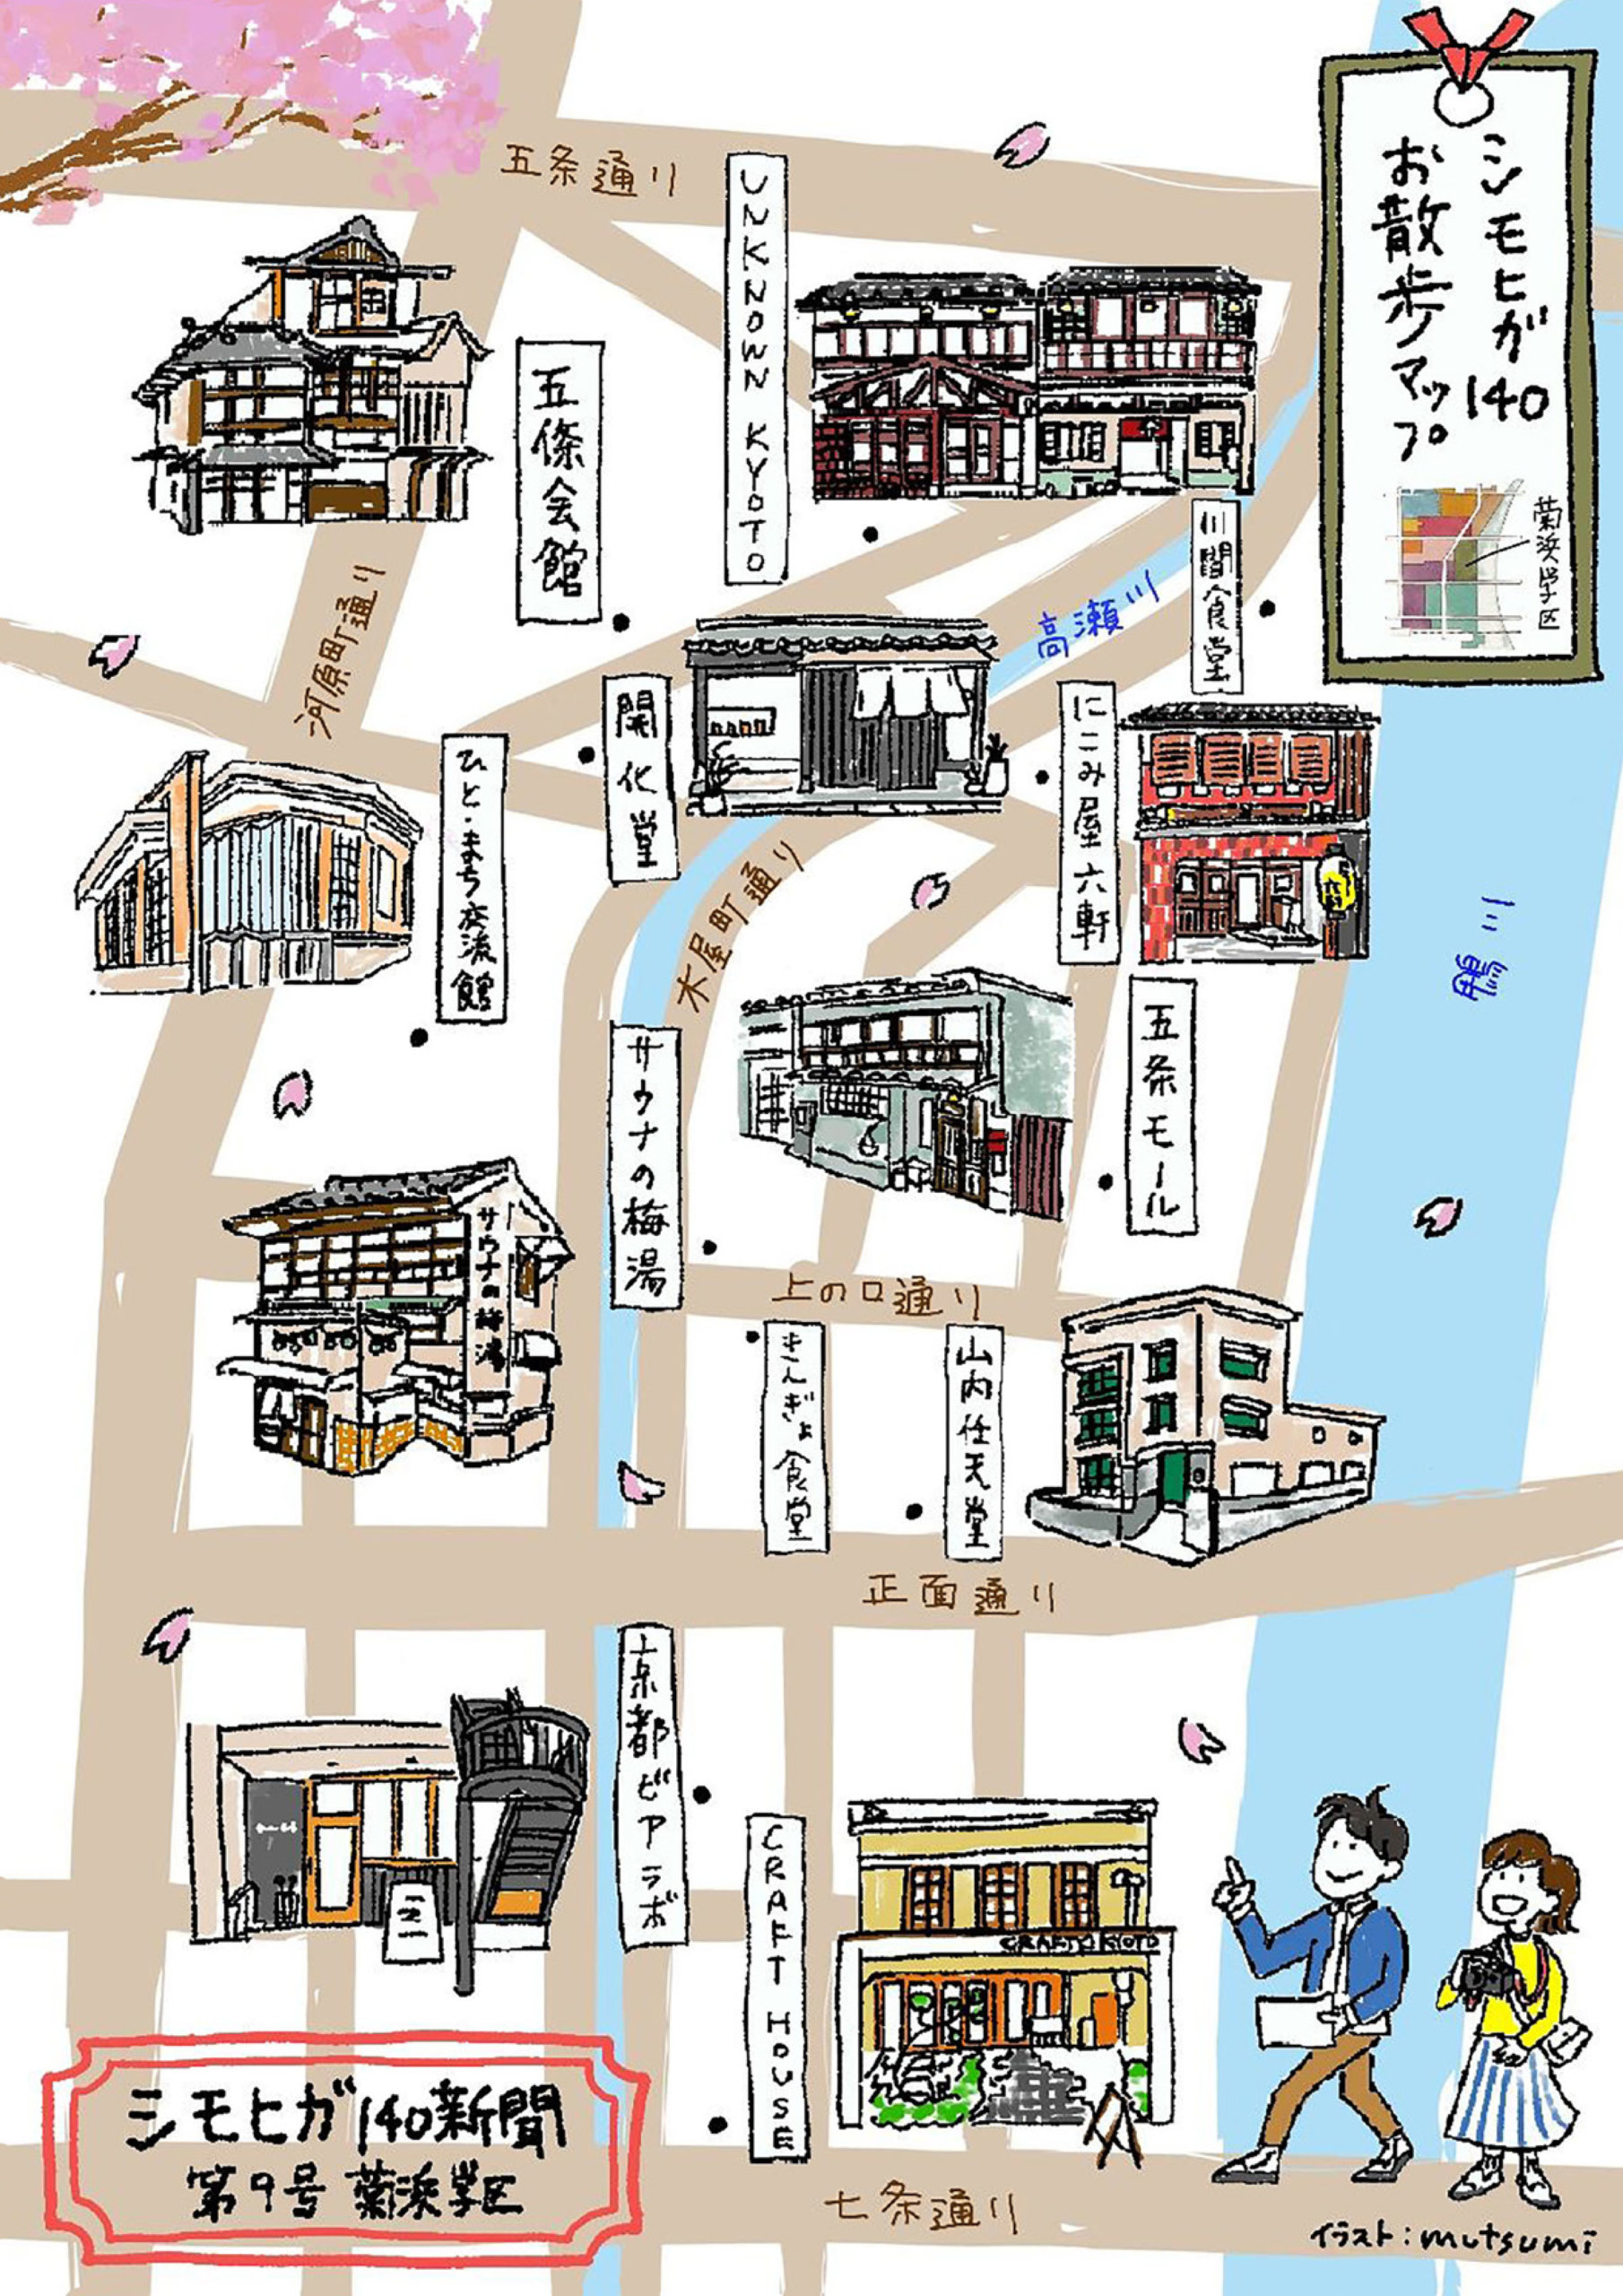 制作実績 シモヒガ140お散歩マップ 菊浜学区 Mutsumi Illustration